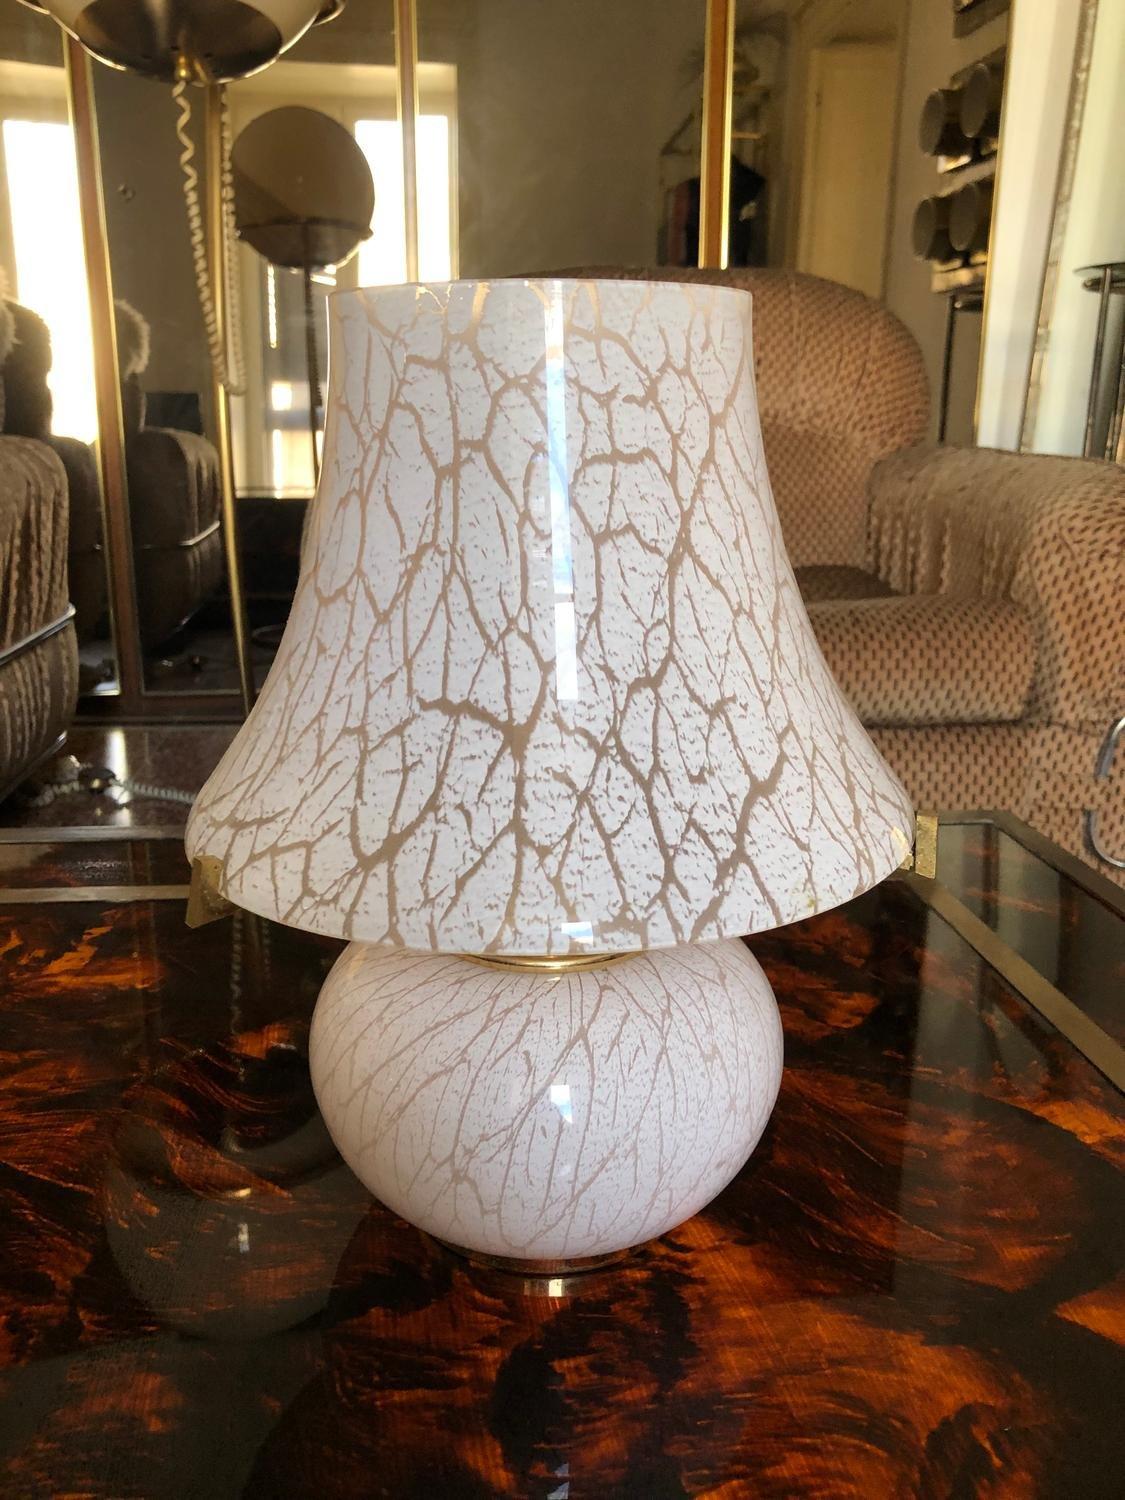 Lampe de table champignon en verre de Murano. Le verre est rose clair avec un motif de camouflage. Un magnifique pied en laiton soutient l'abat-jour.
Détails
Créateur : Murano
Dimensions : Hauteur : 32cm Diamètre : 26cm
Matériaux et techniques :